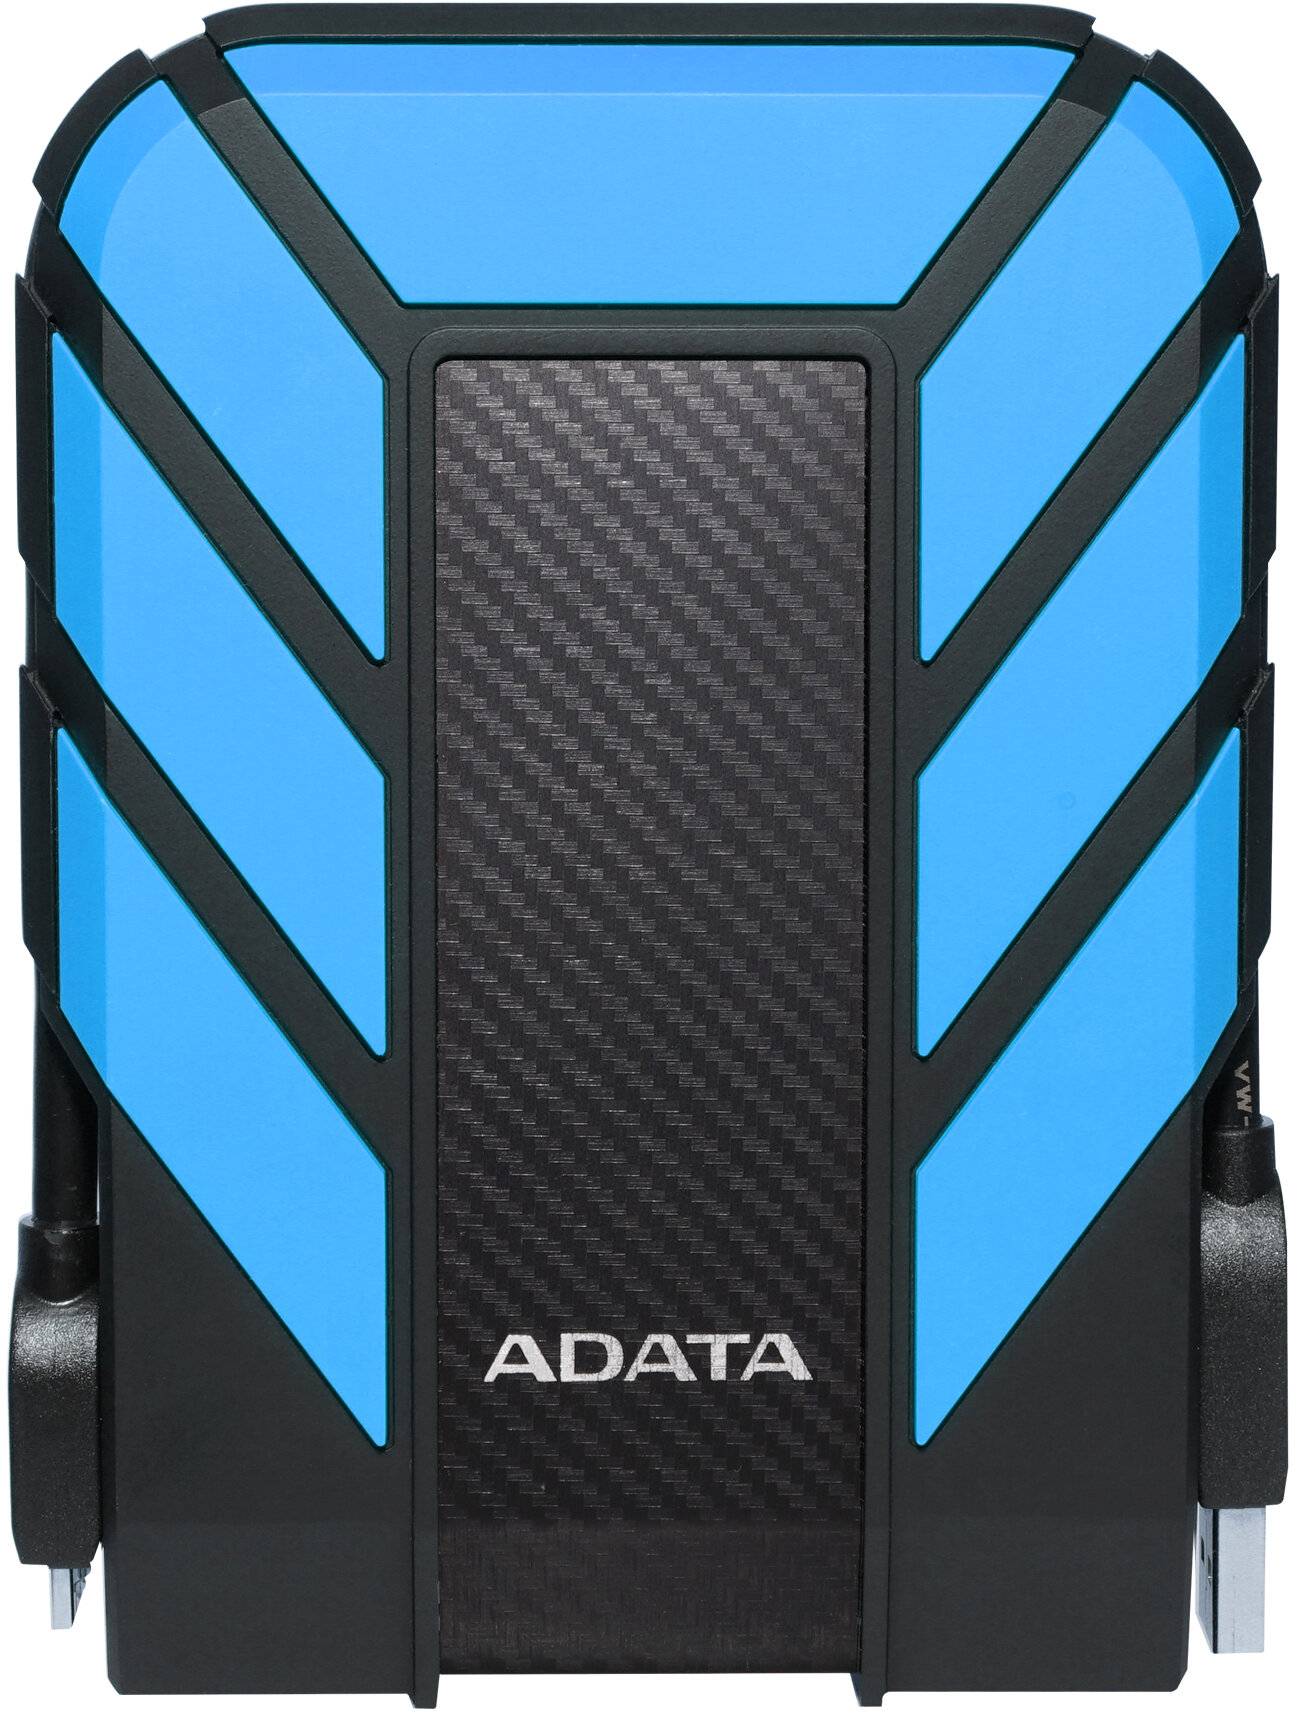 Внешний жесткий диск/ Portable HDD 1TB ADATA HD710 Pro (Blue), IP68, USB 3.2 Gen1, 133x99x22mm, 270g /3 года/